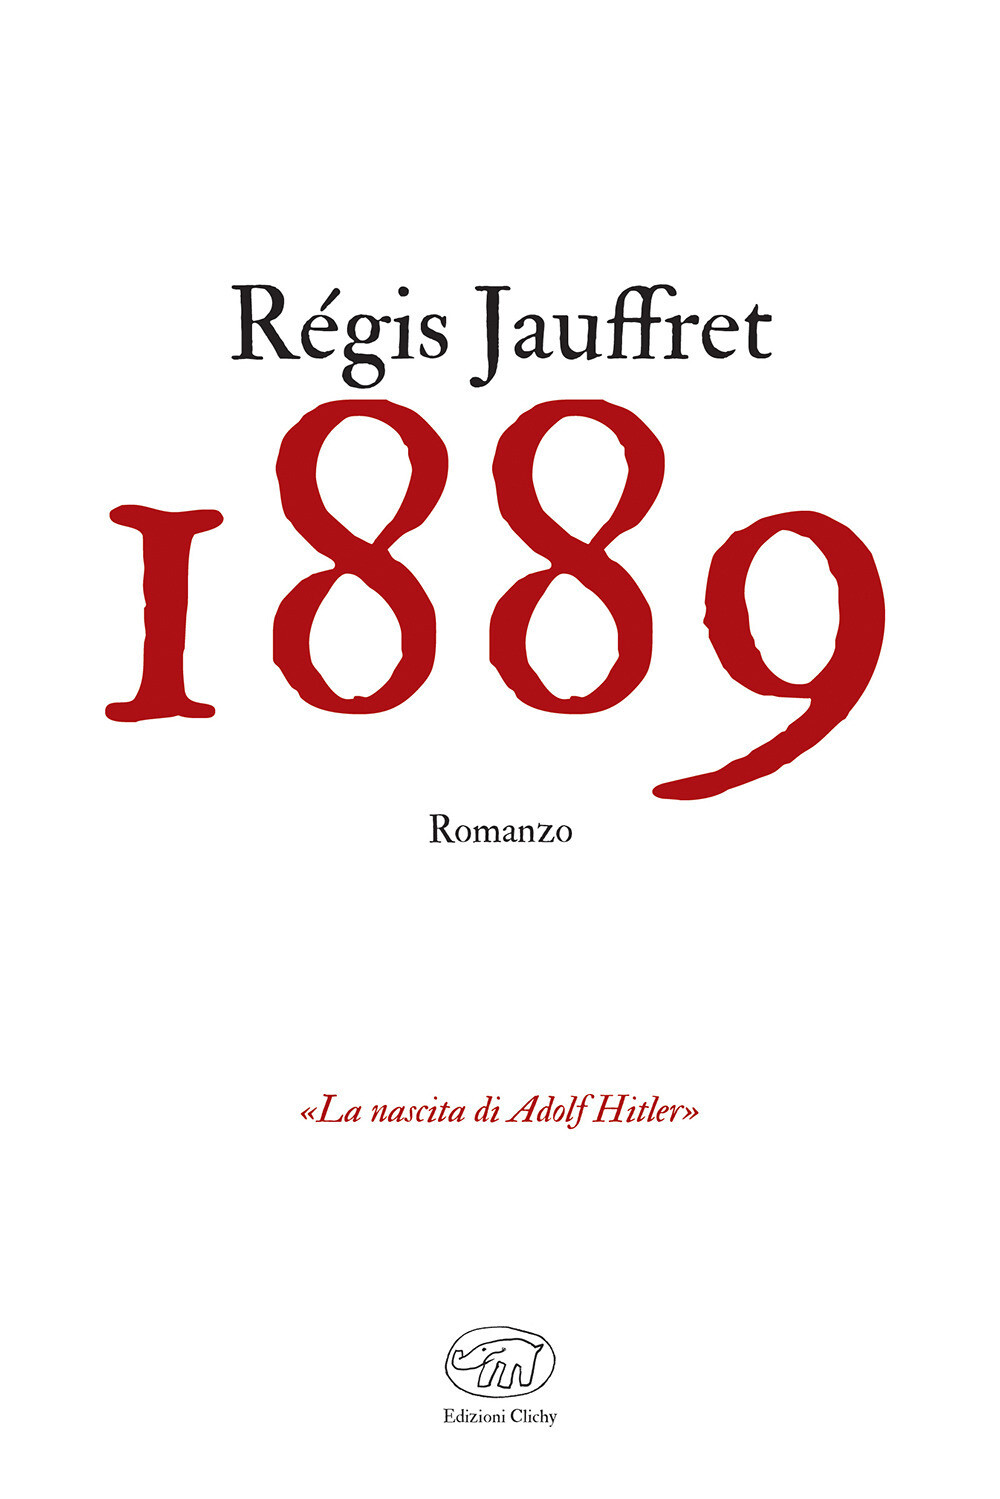 1889 Régis